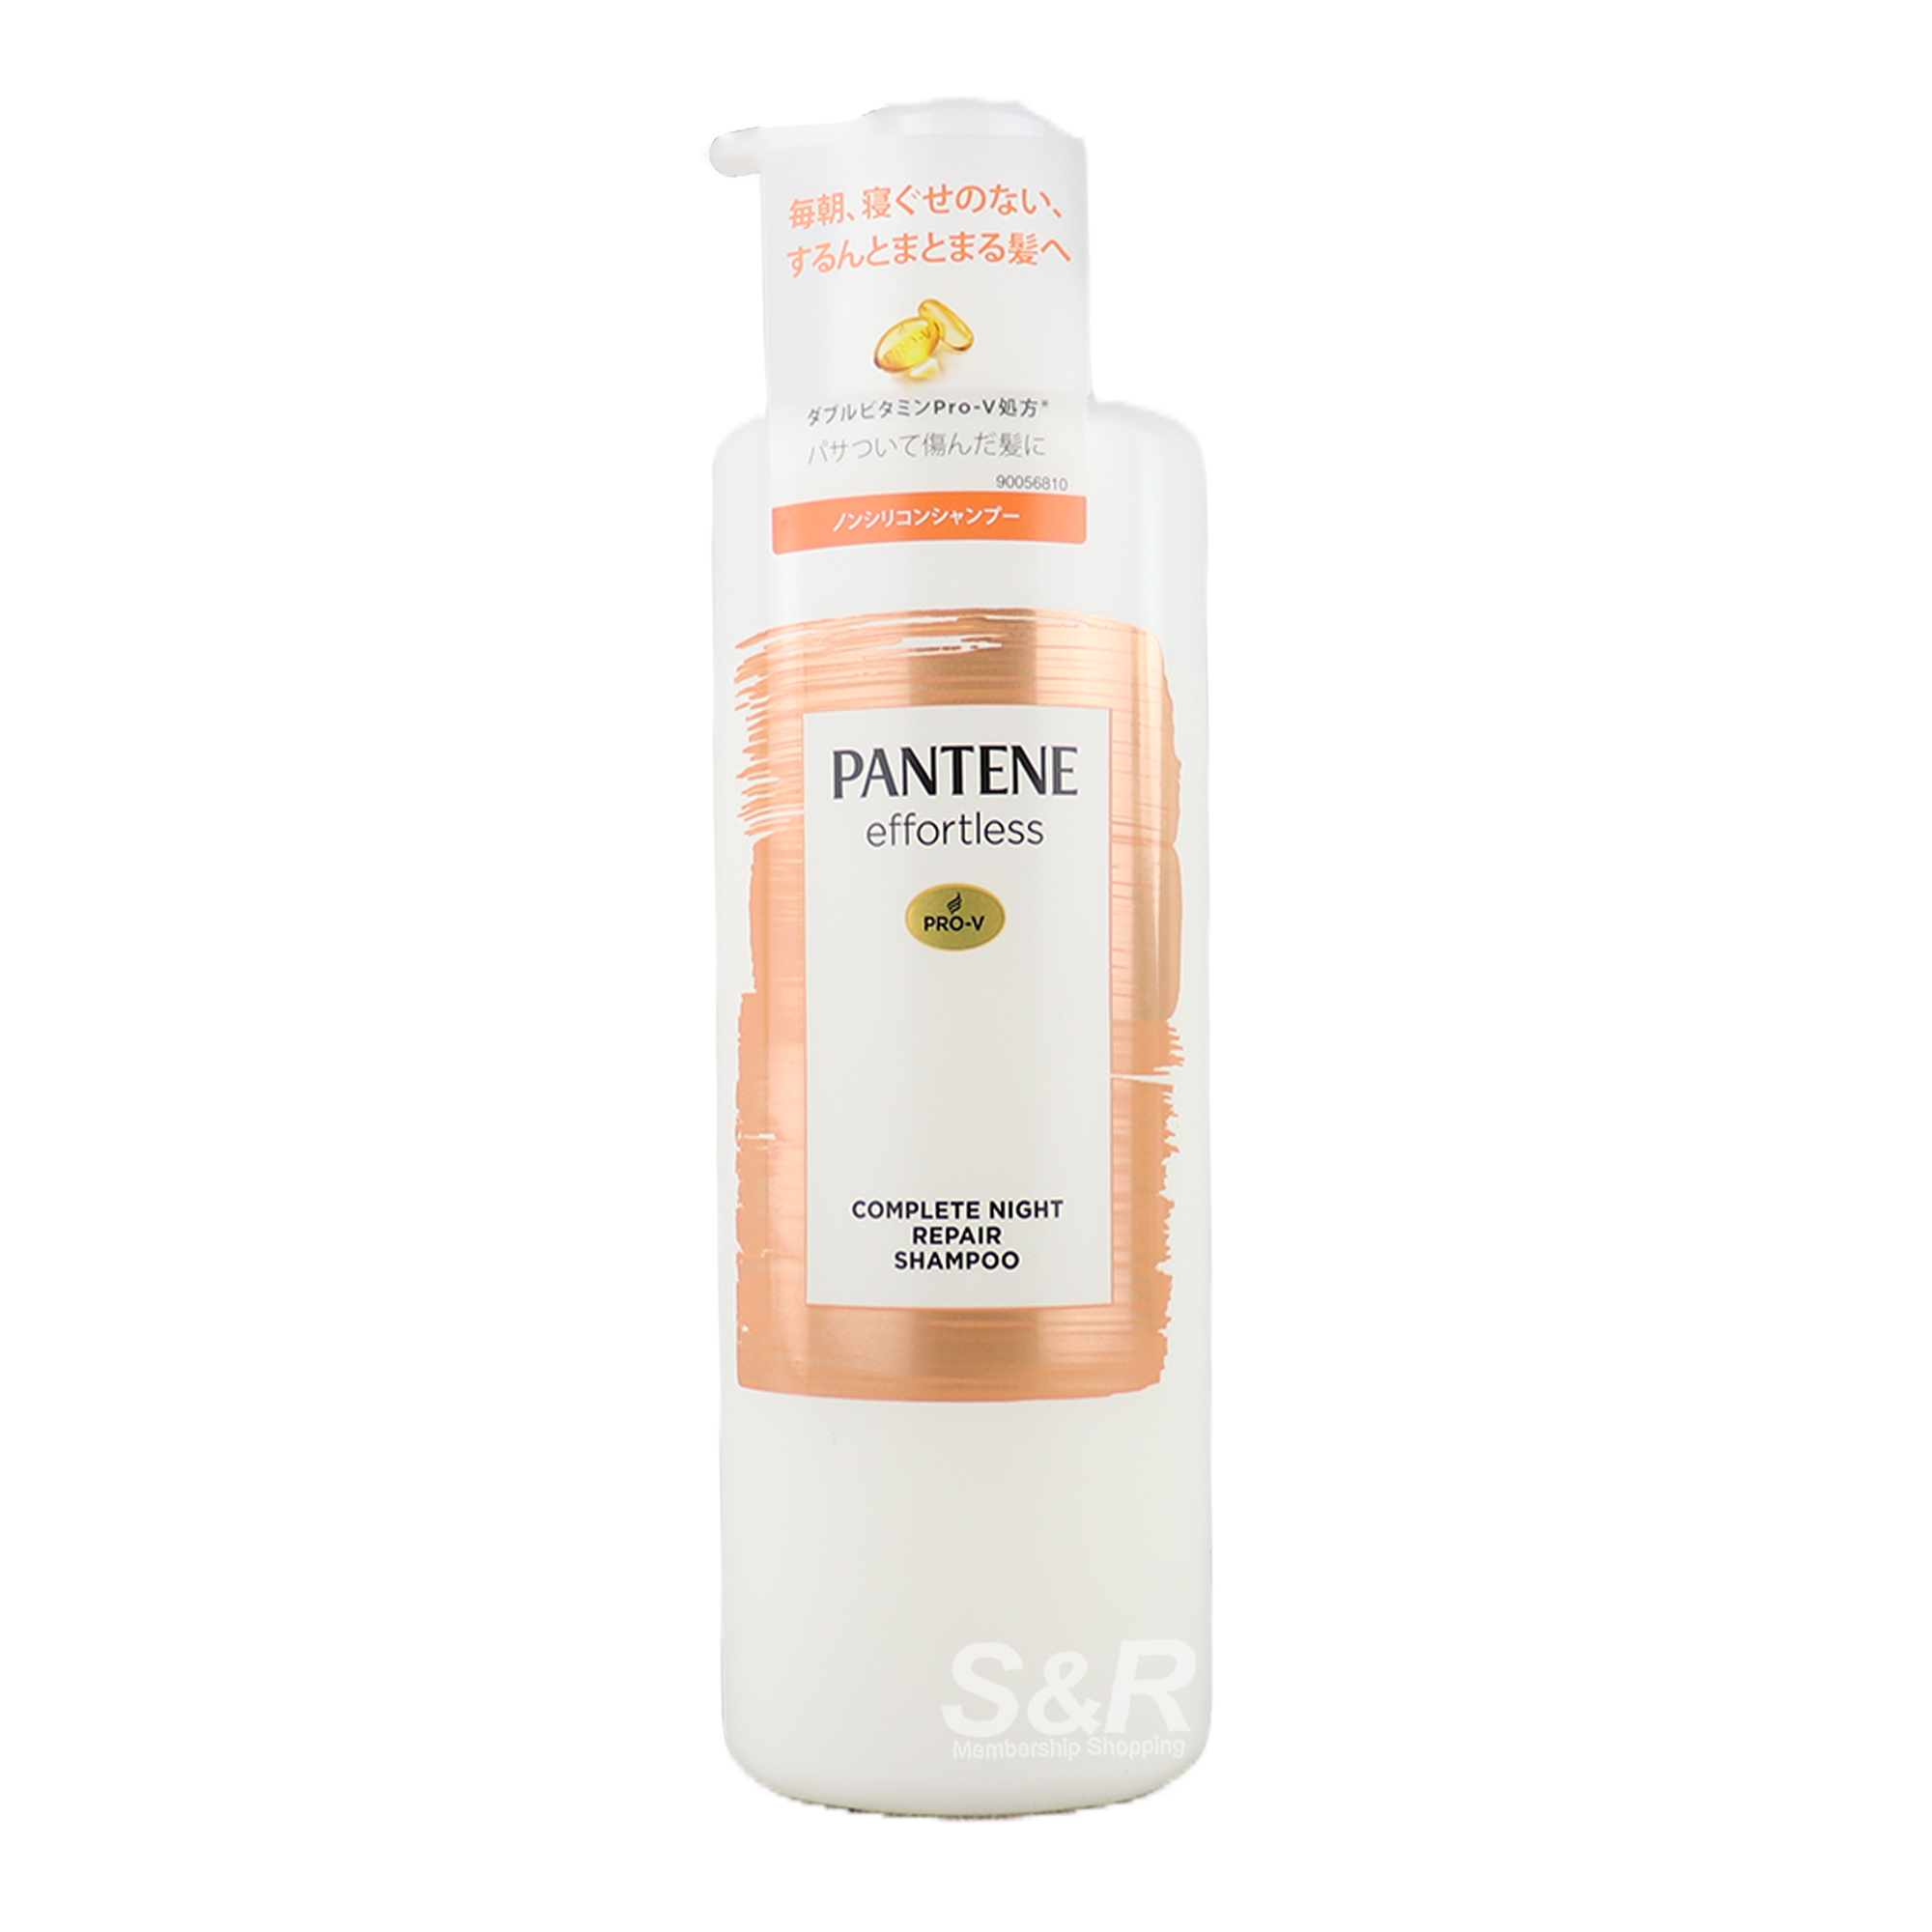 Pantene Effortless Complete Night Repair Shampoo 480mL